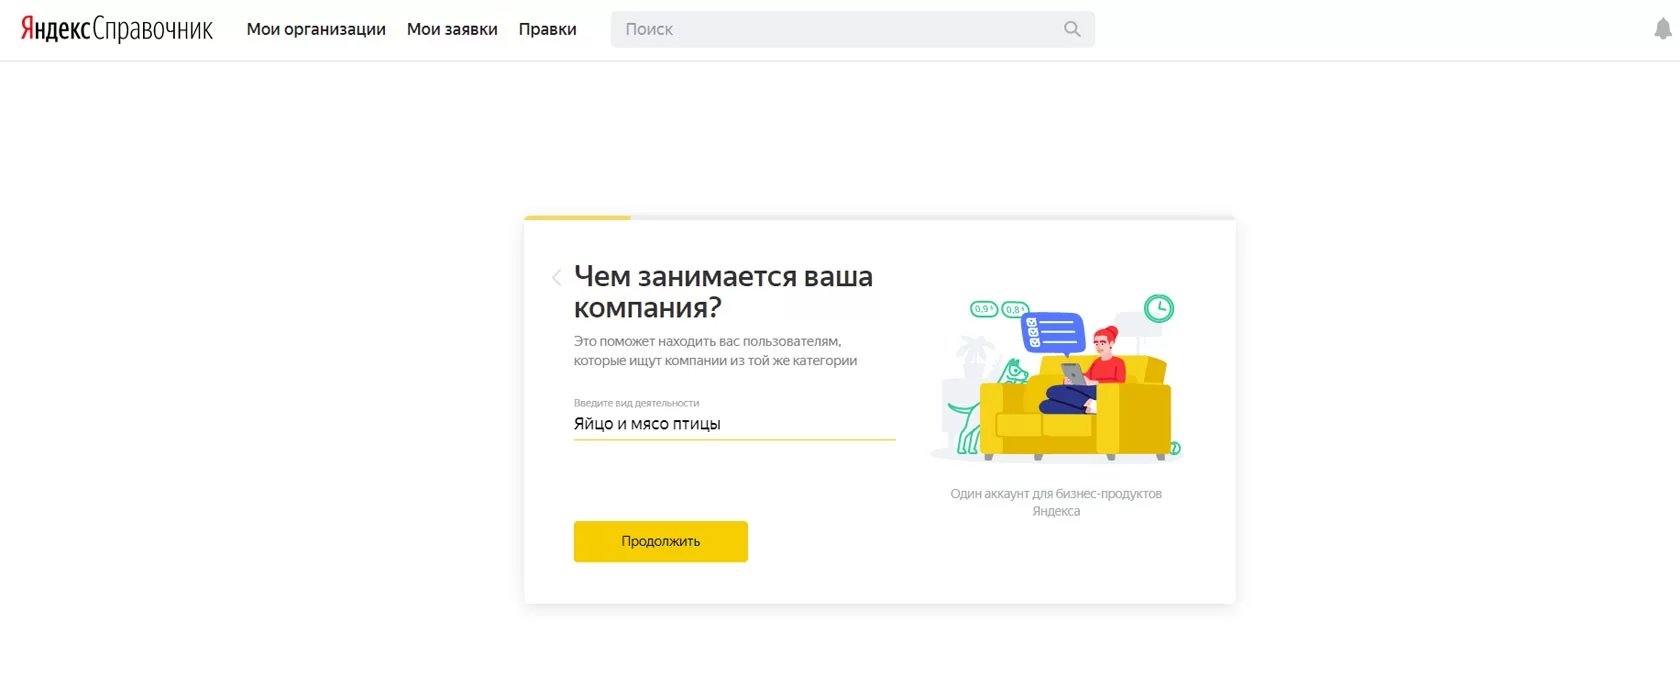 Яндекс справочник личный кабинет